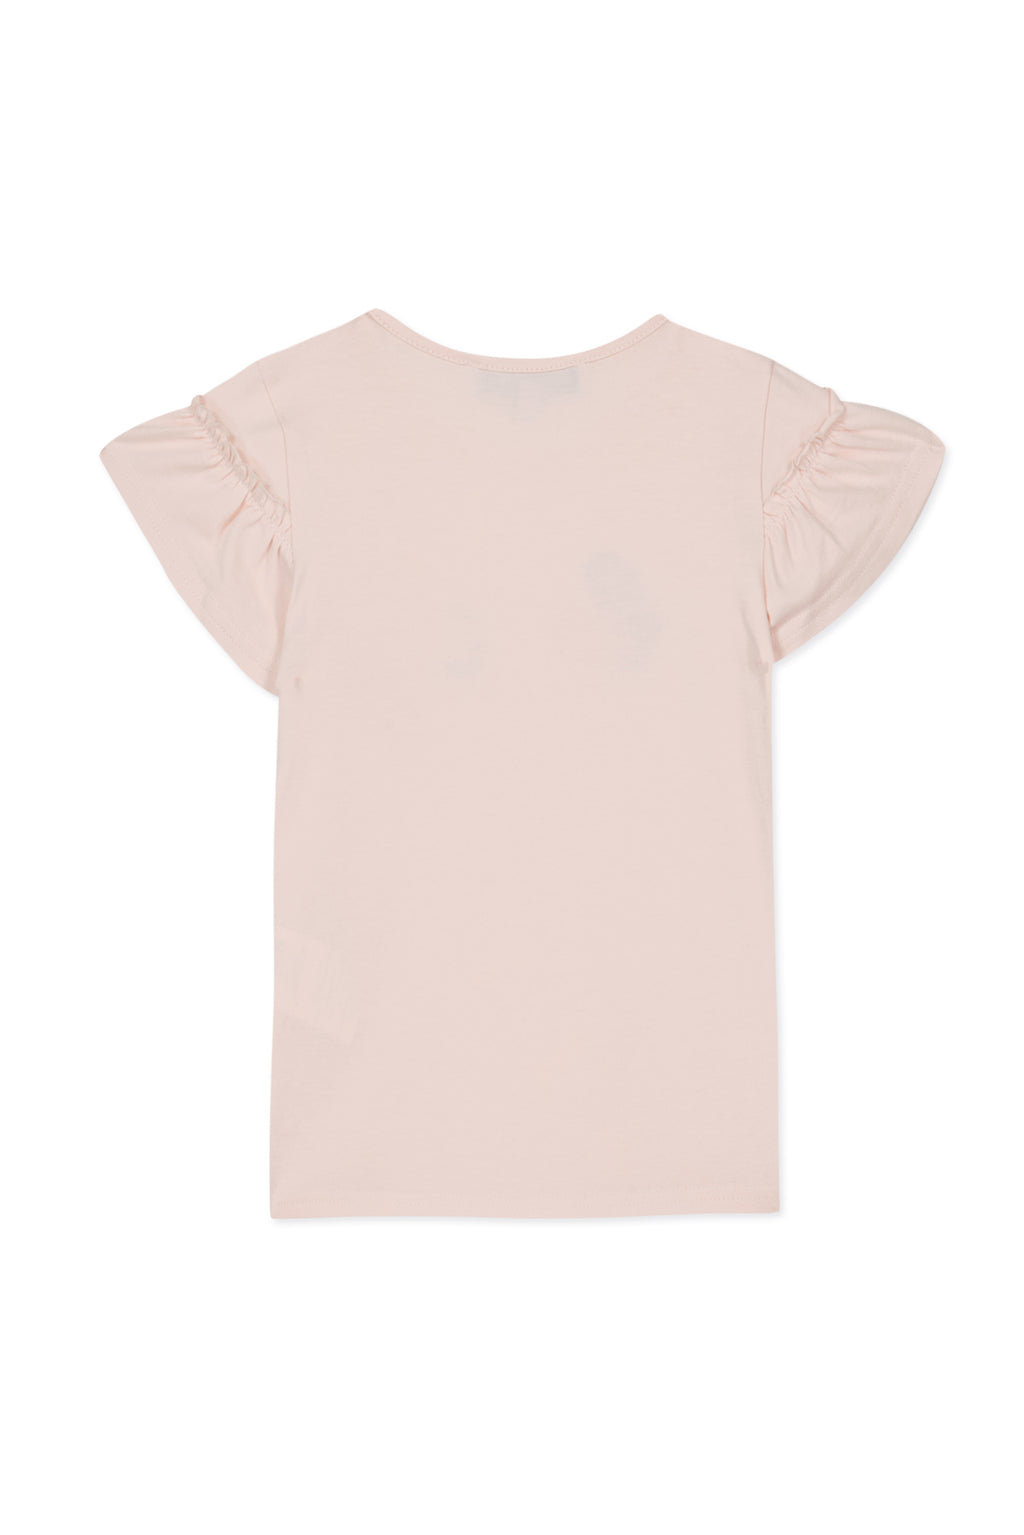 Camiseta - Rosa pálido Ilustración hermoso